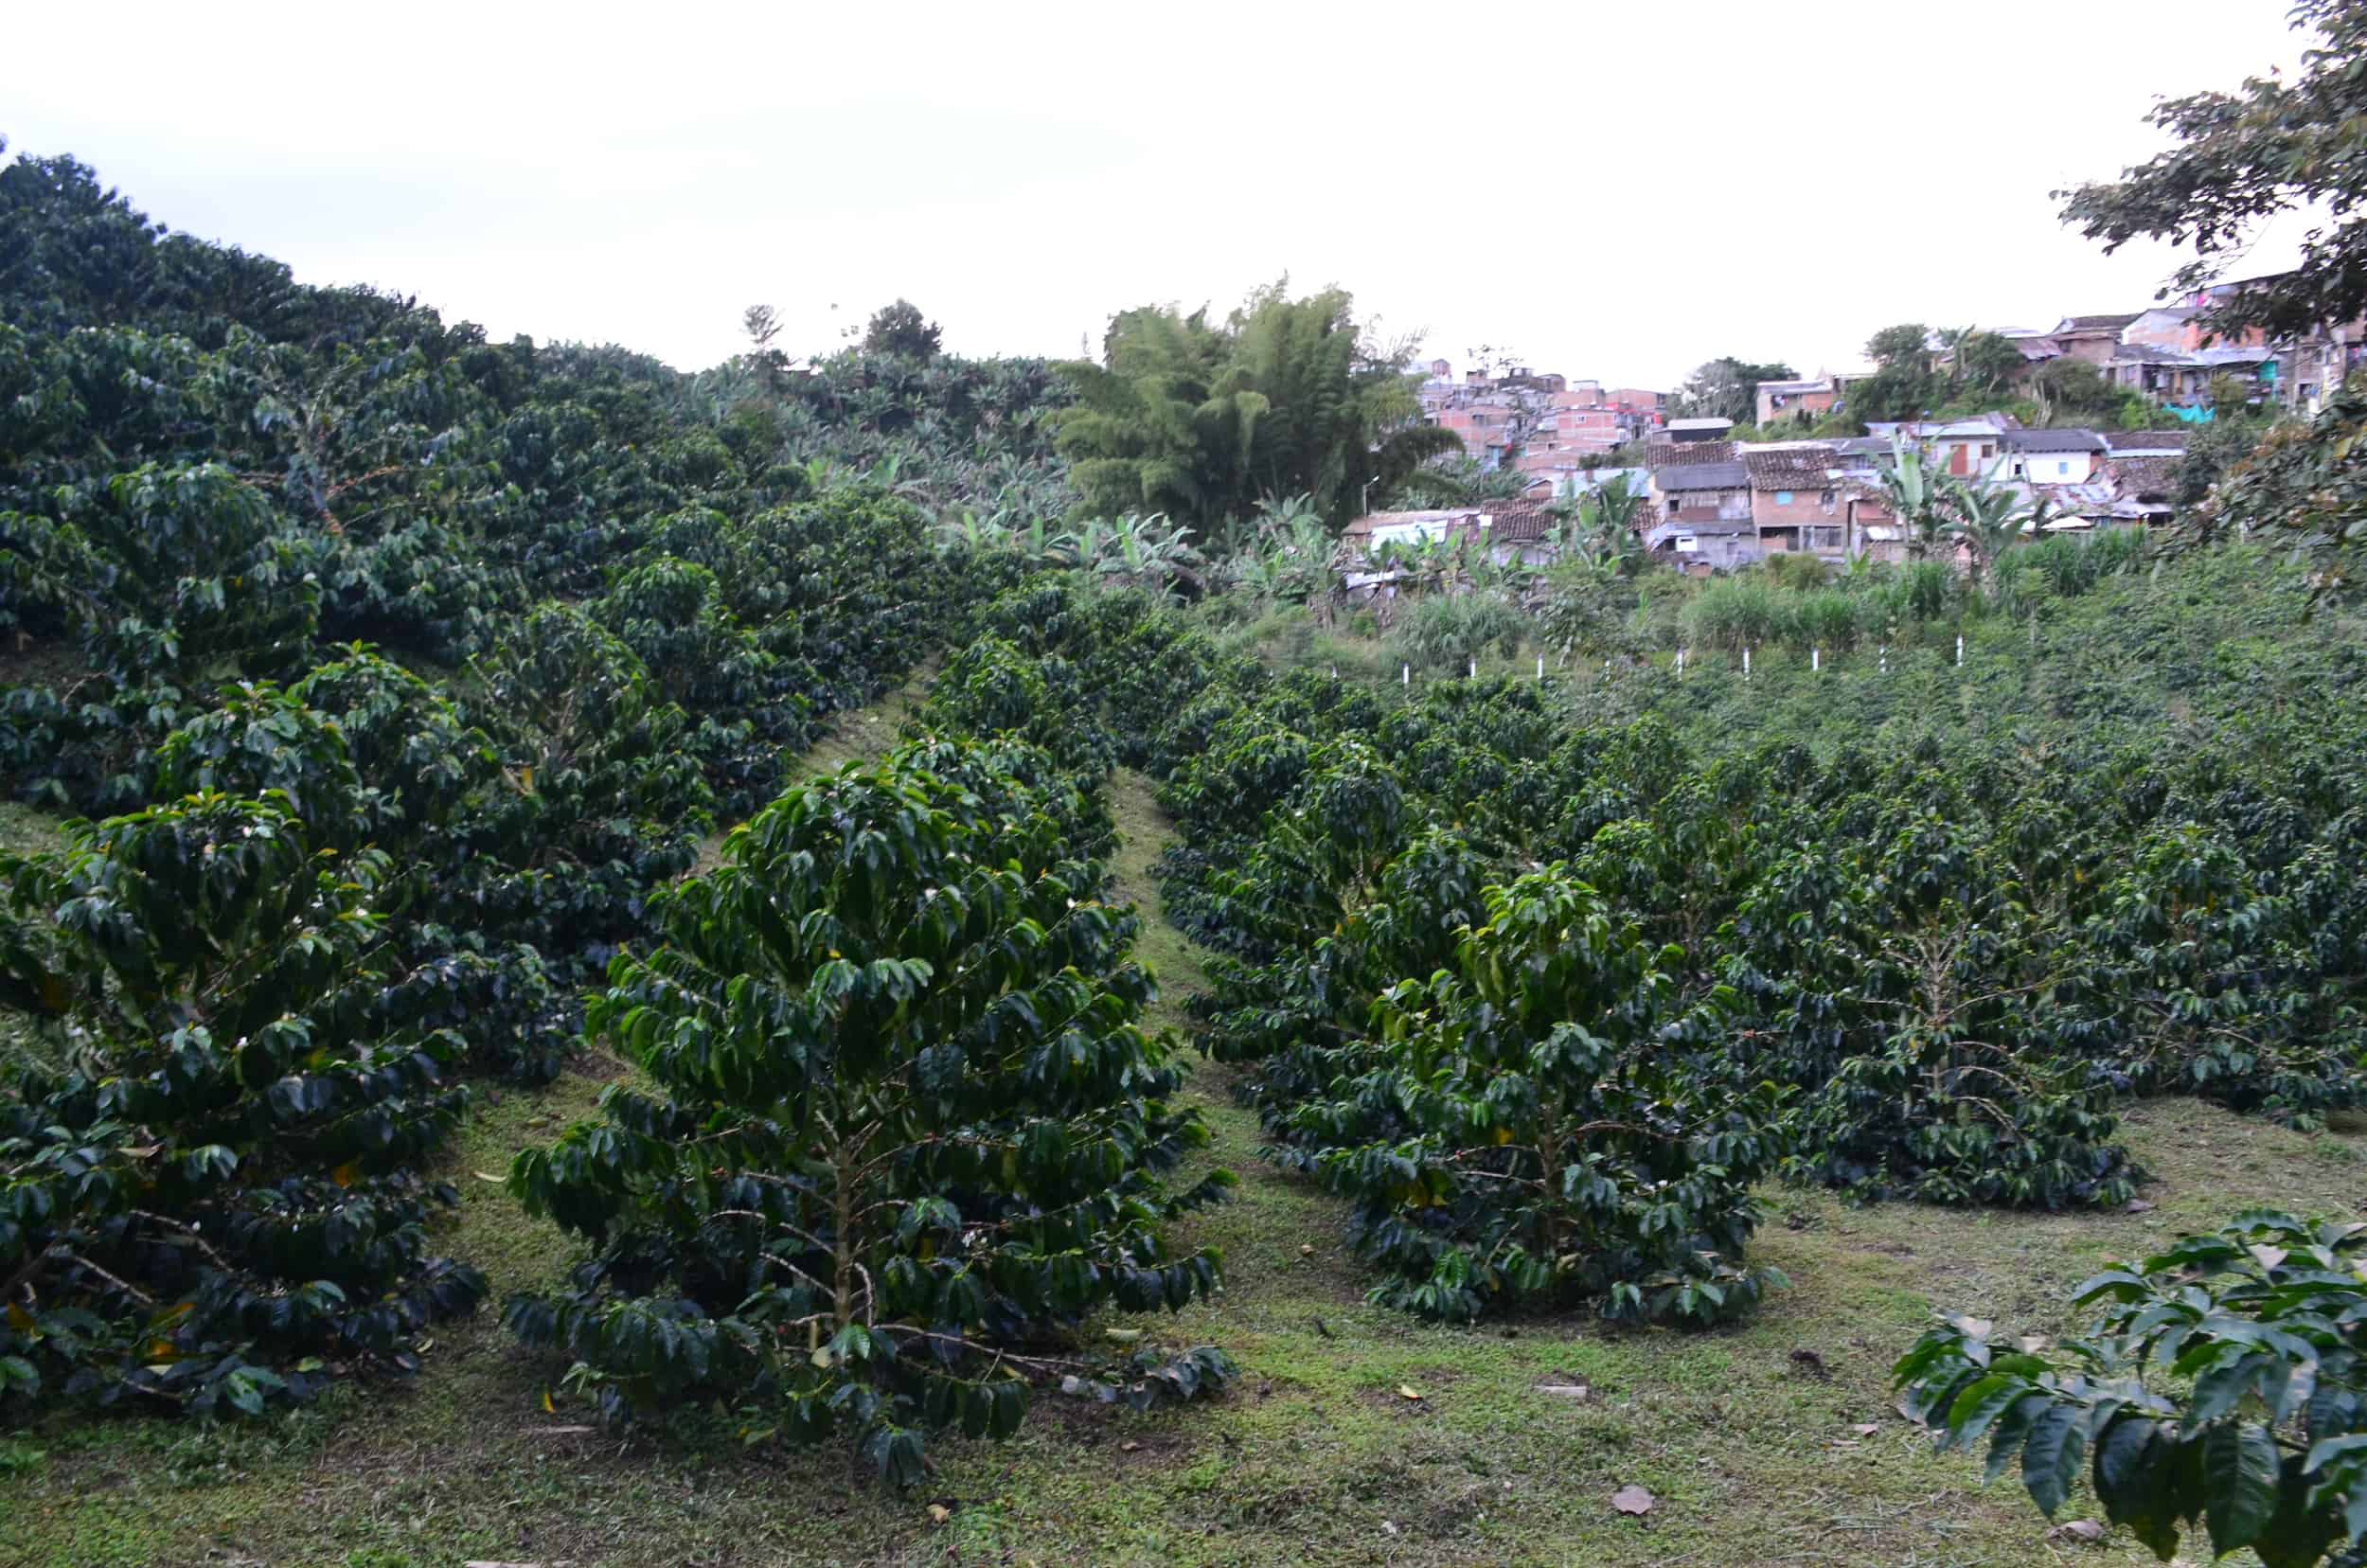 Coffee trees at Café Palomino